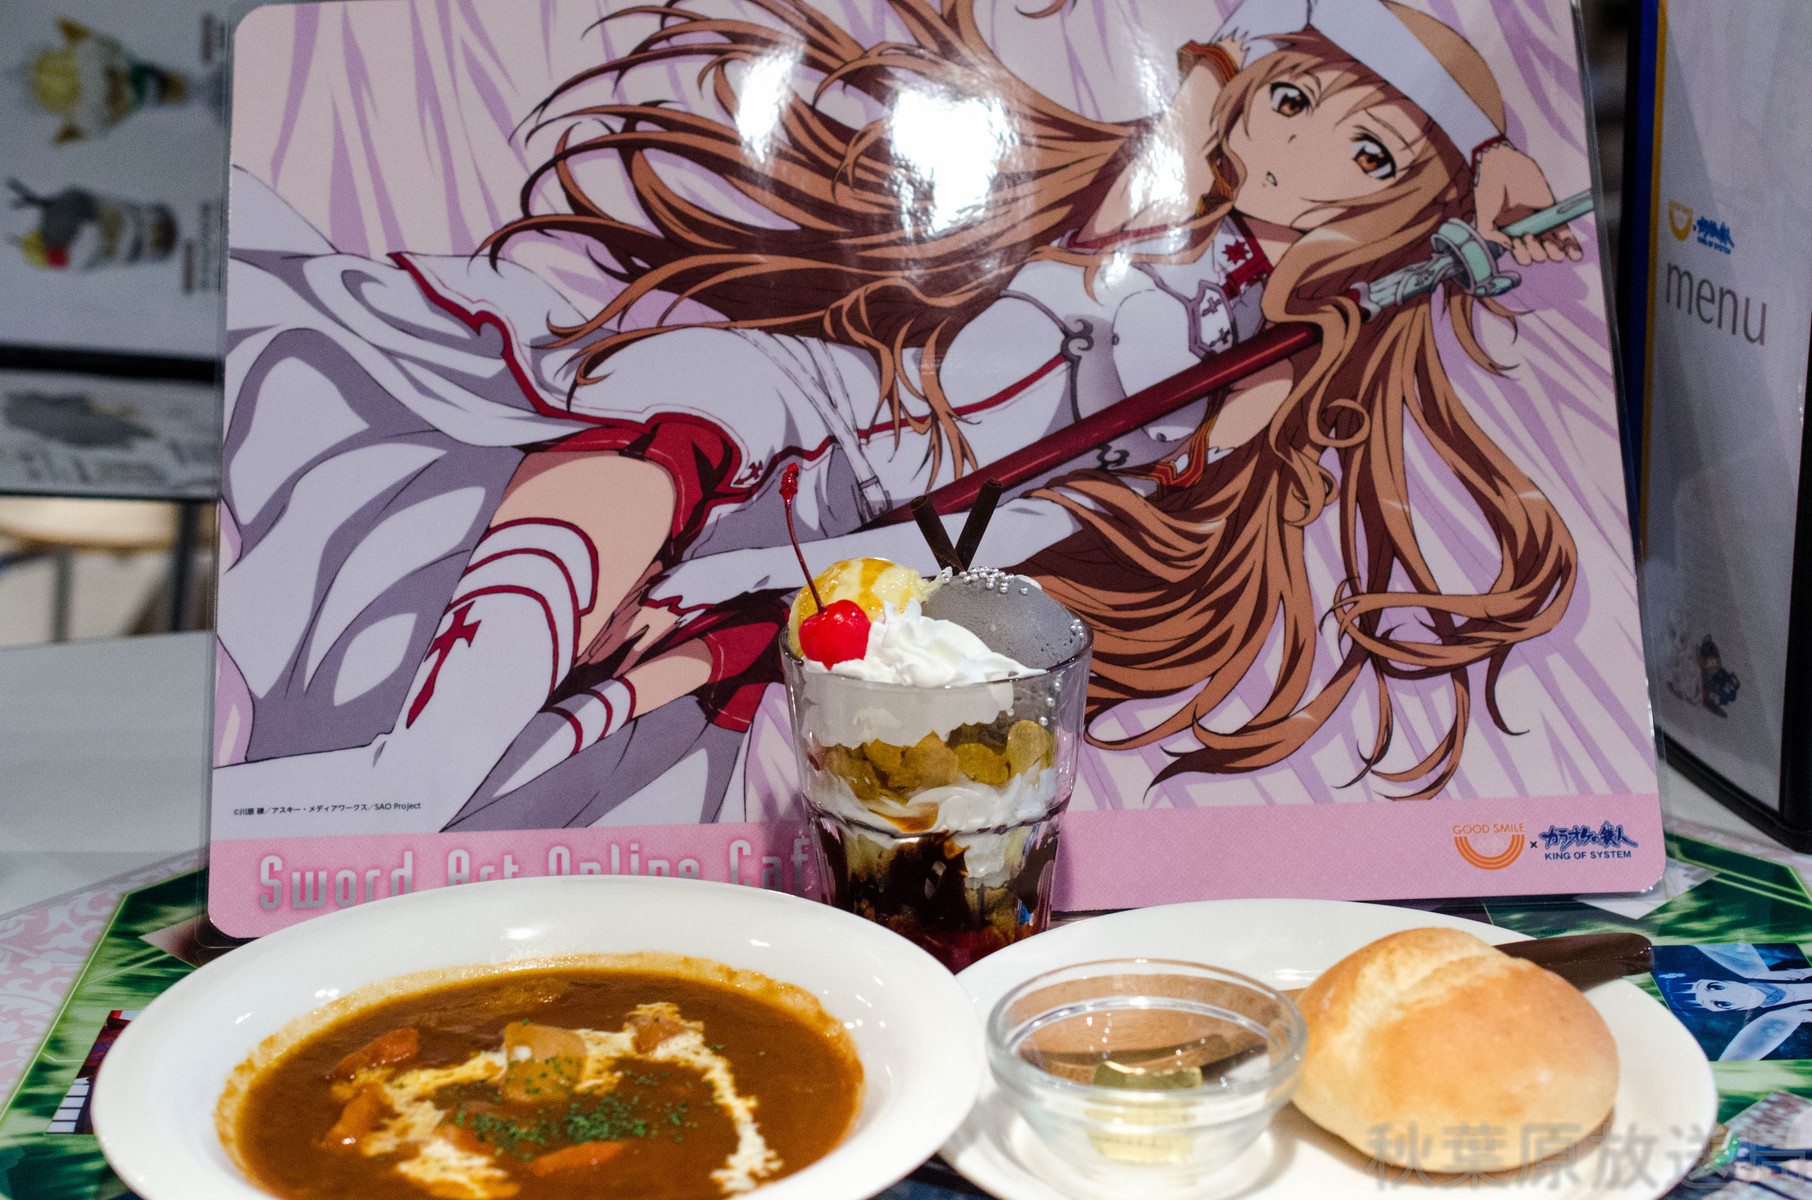 アスナの手料理を ソードアート オンラインカフェ で食べられる 可愛いよアスナ アンコール リベンジ アキバな本屋